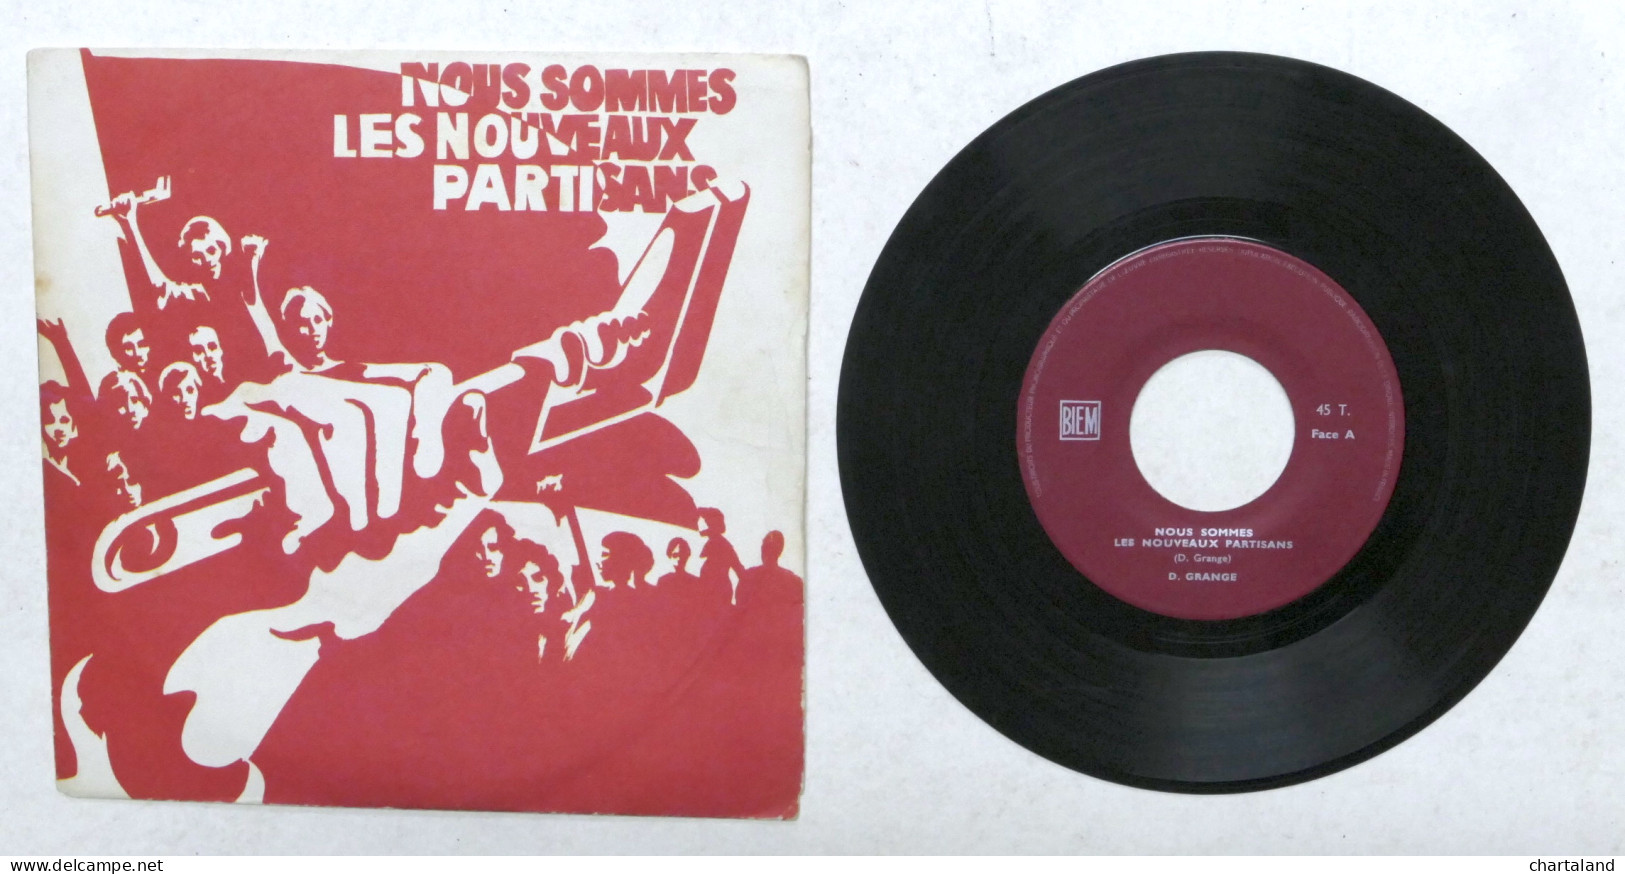 Disco Vinile 45 Giri - BIEM - Nous Sommes Les Noveaux Partisans - Complete Collections